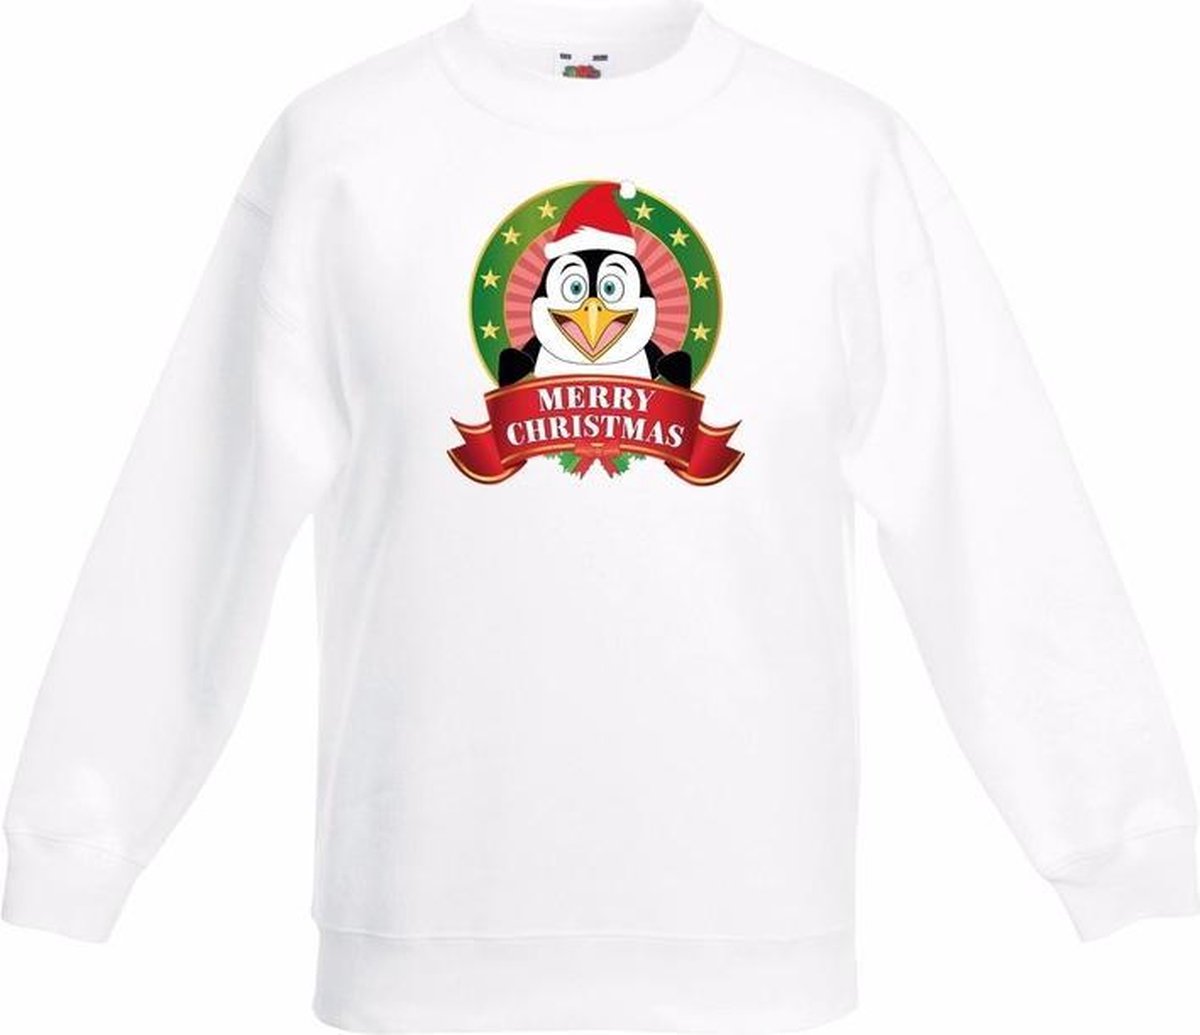 Kerst sweater voor kinderen met pinguin print - wit - jongens en meisjes sweater 3-4 jaar (98/104)